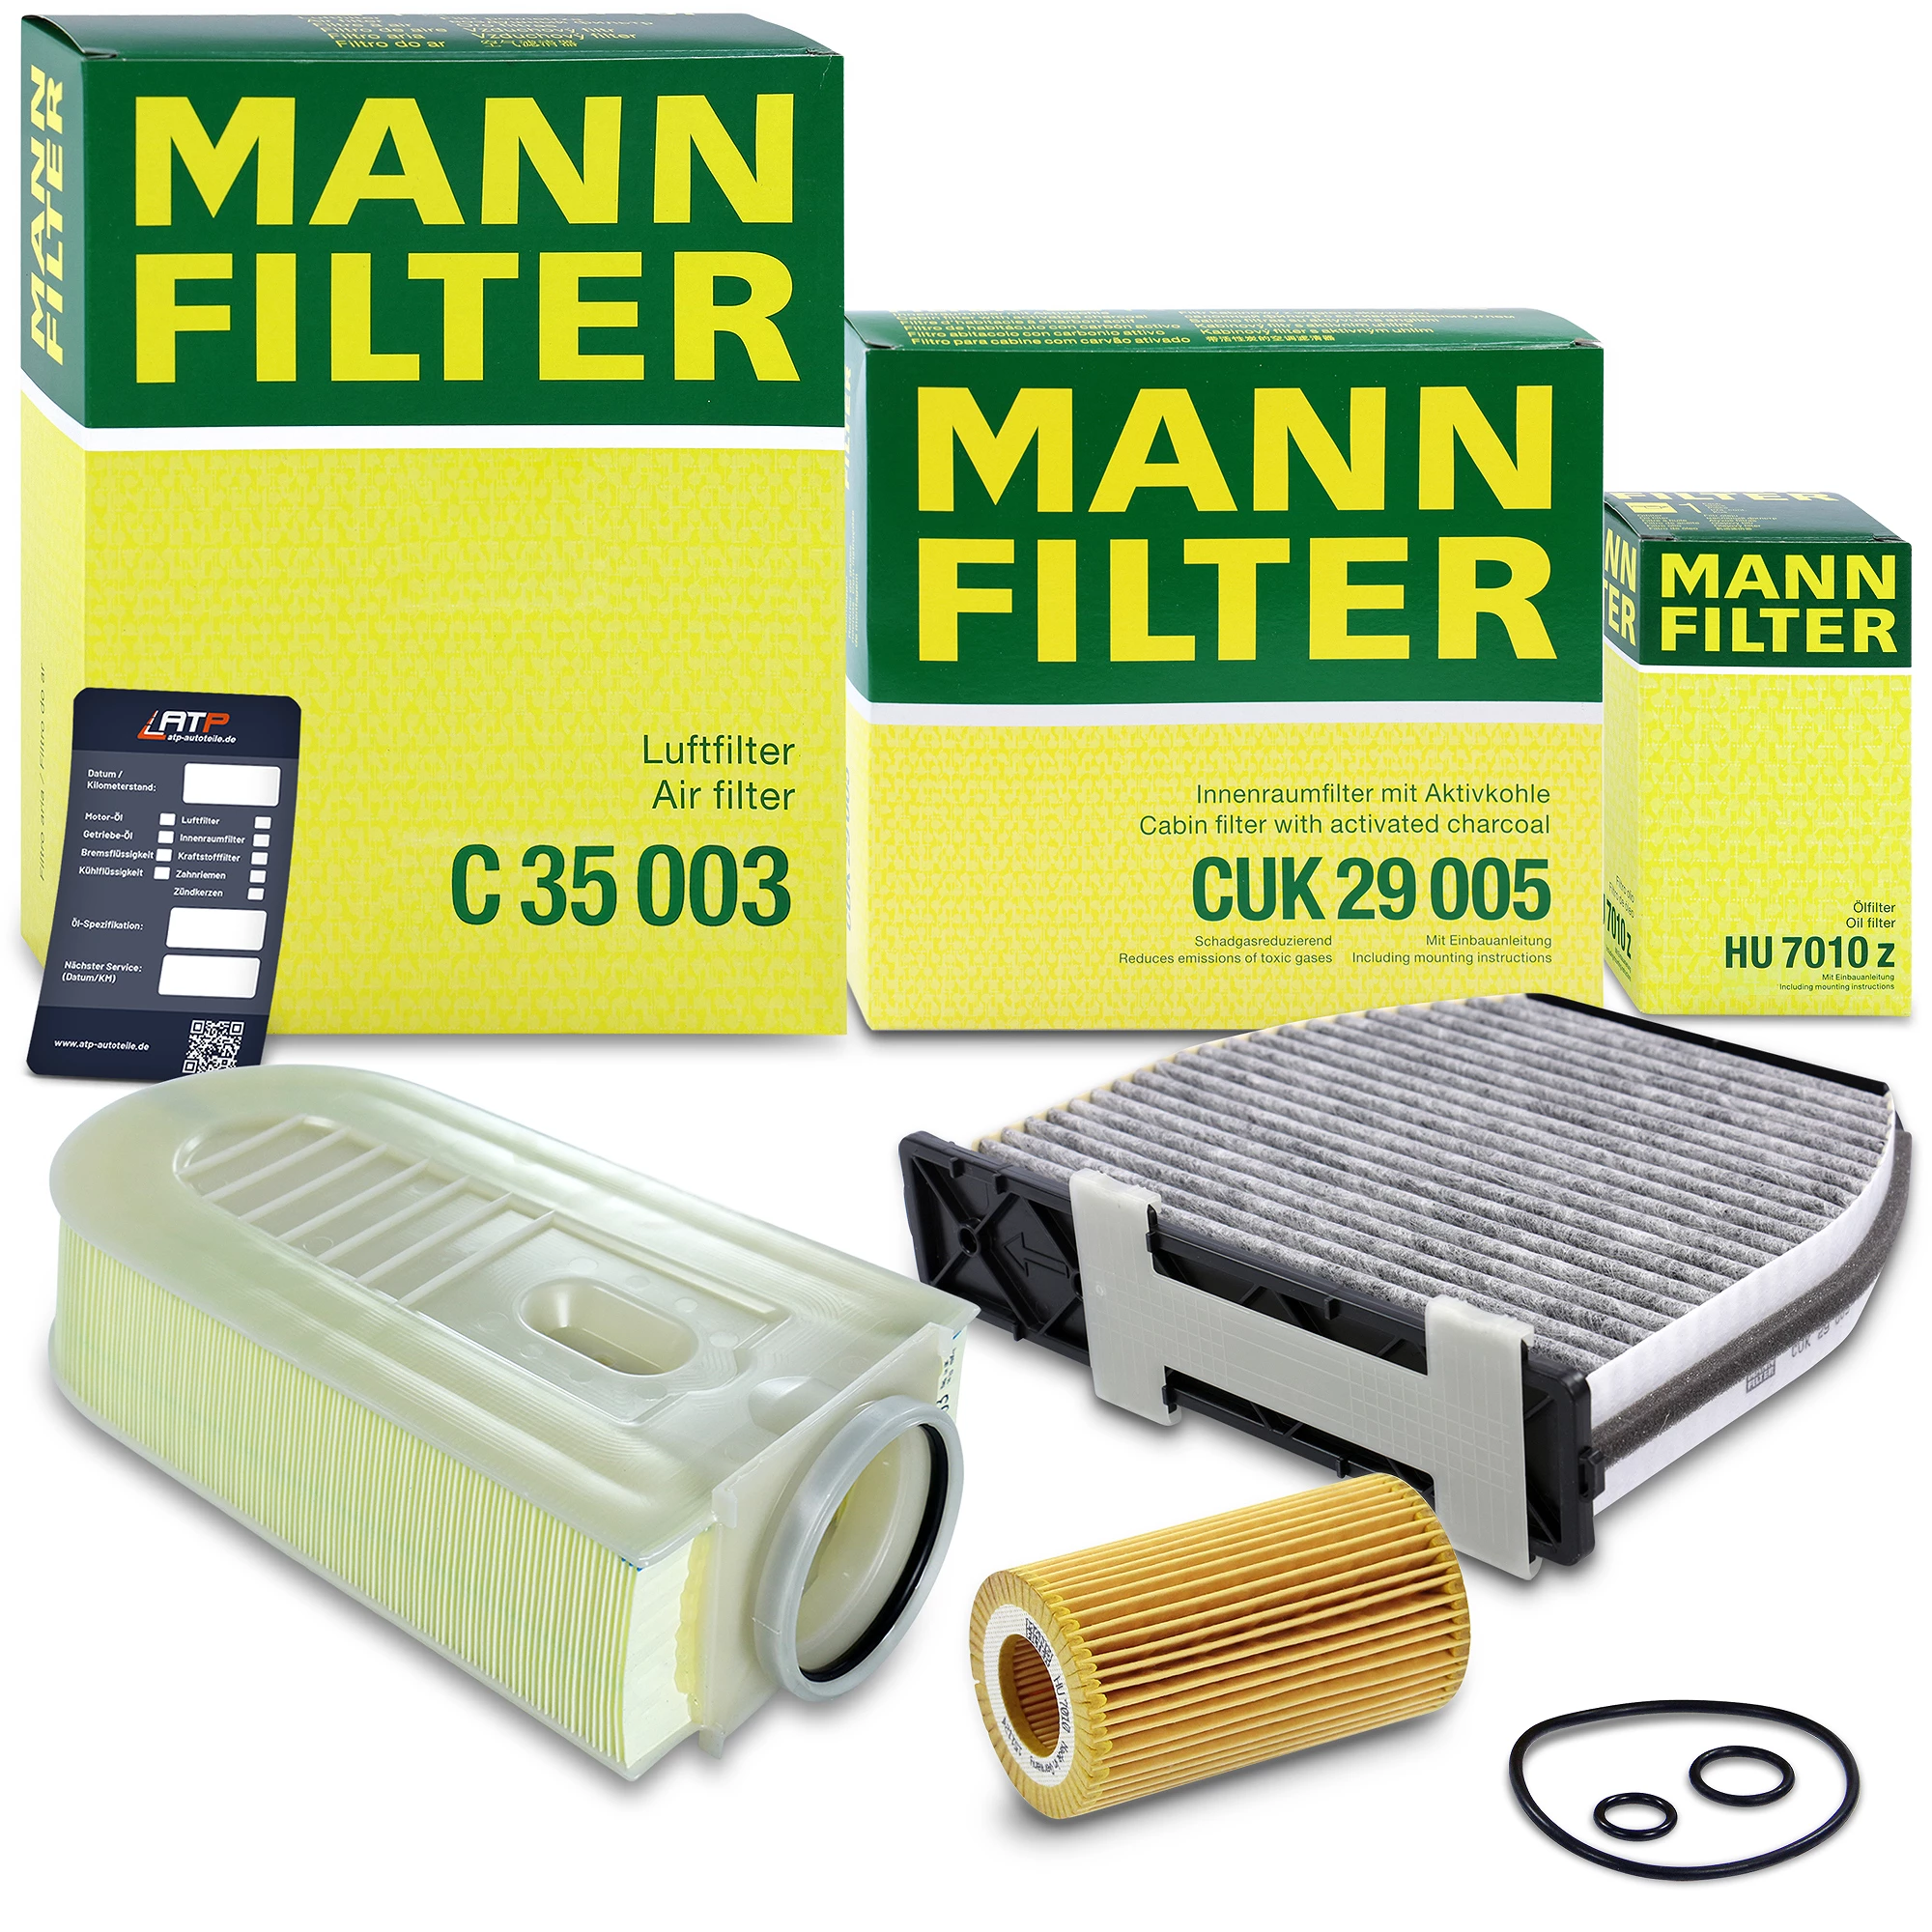 MANN-FILTER Inspektionspaket Filtersatz SET A 10492618 günstig